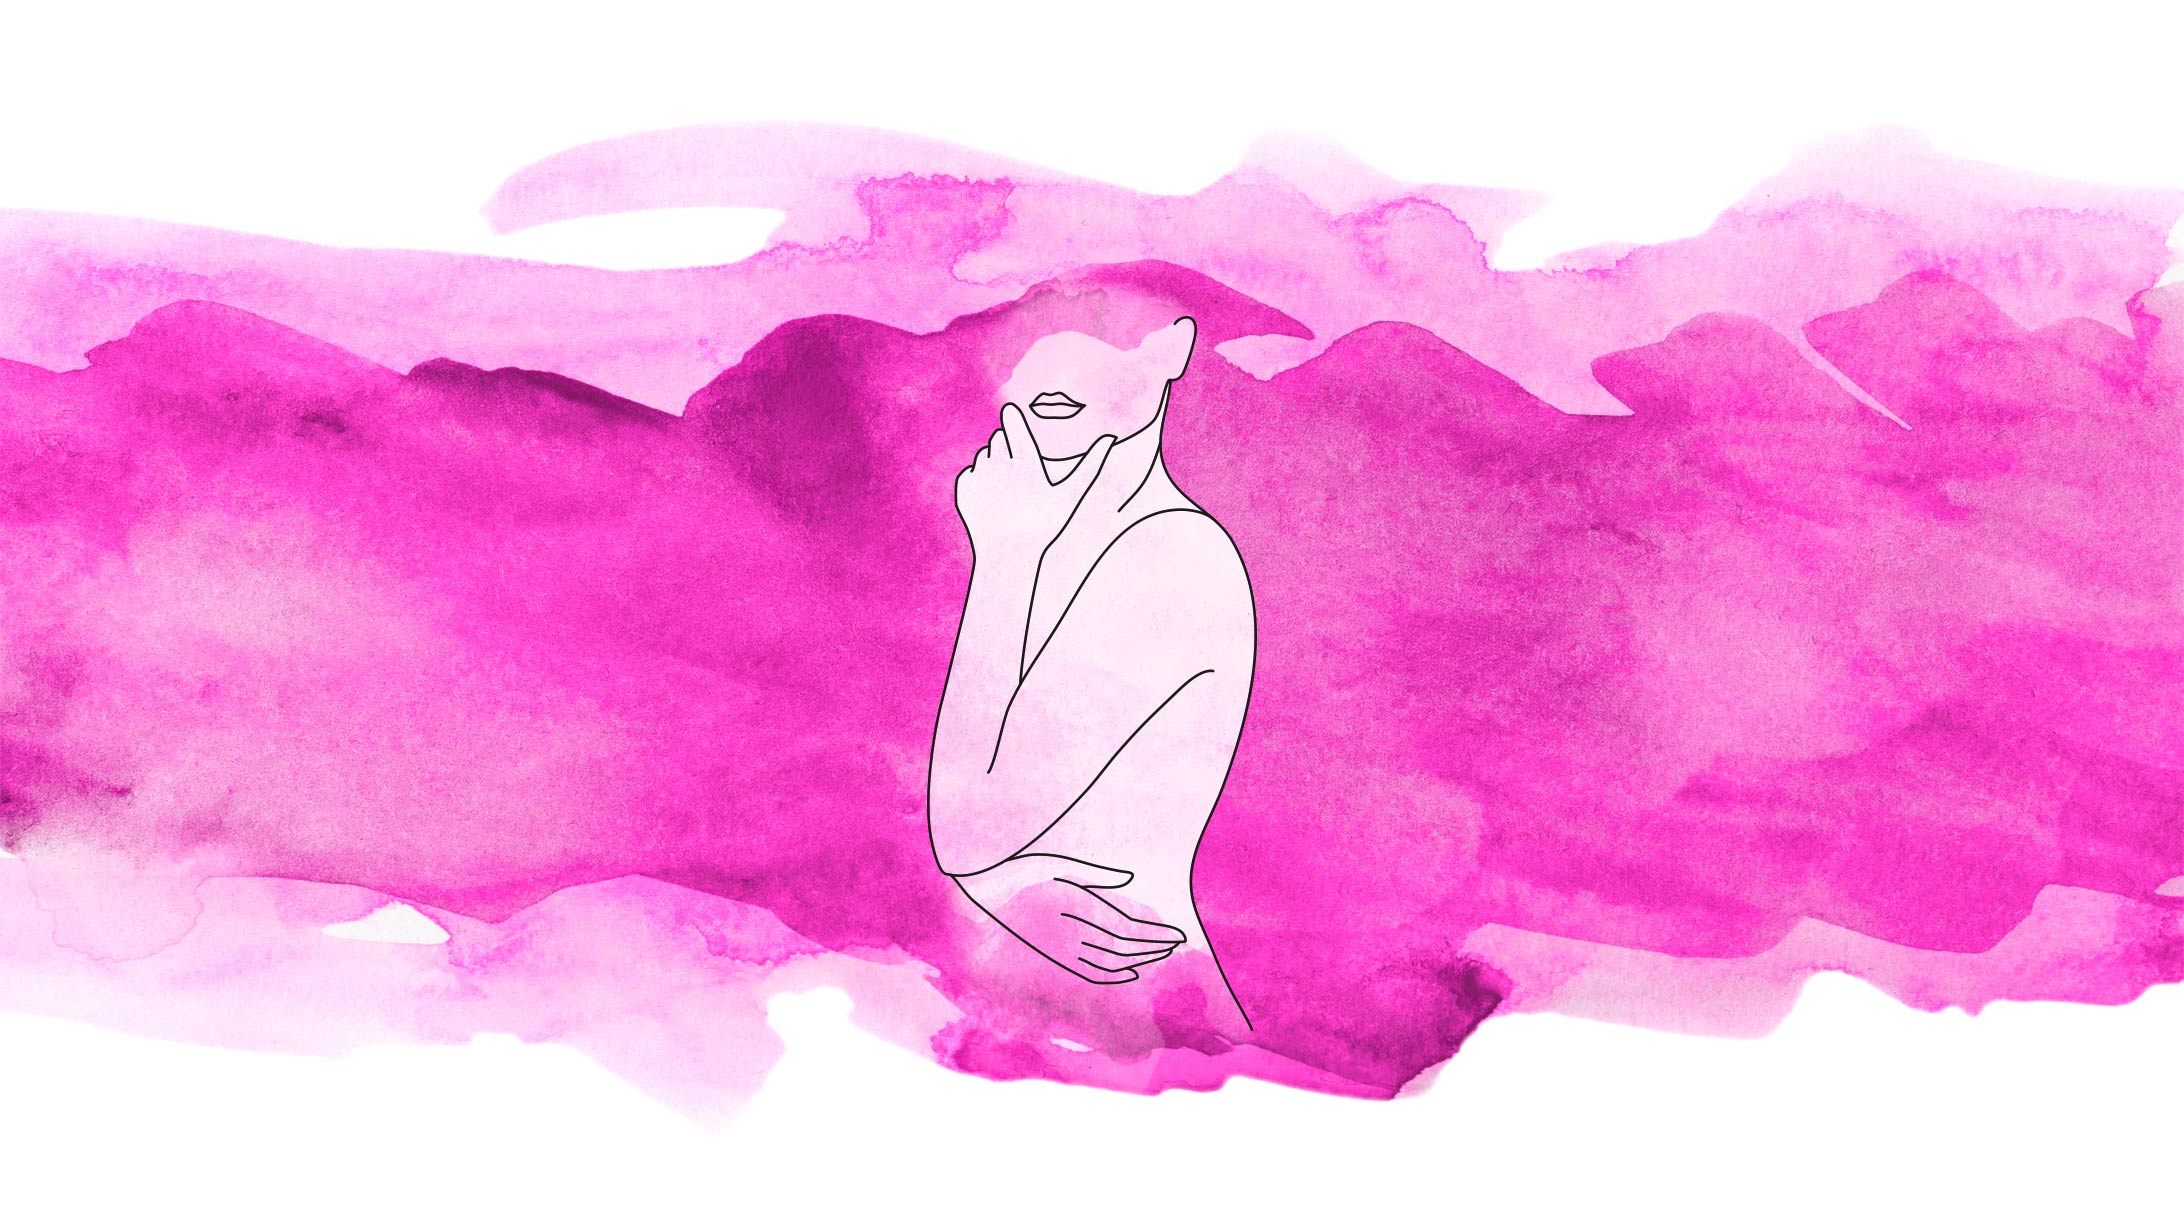 Illustration eines Frauenoberkörpers vor pinkem Hintergrund